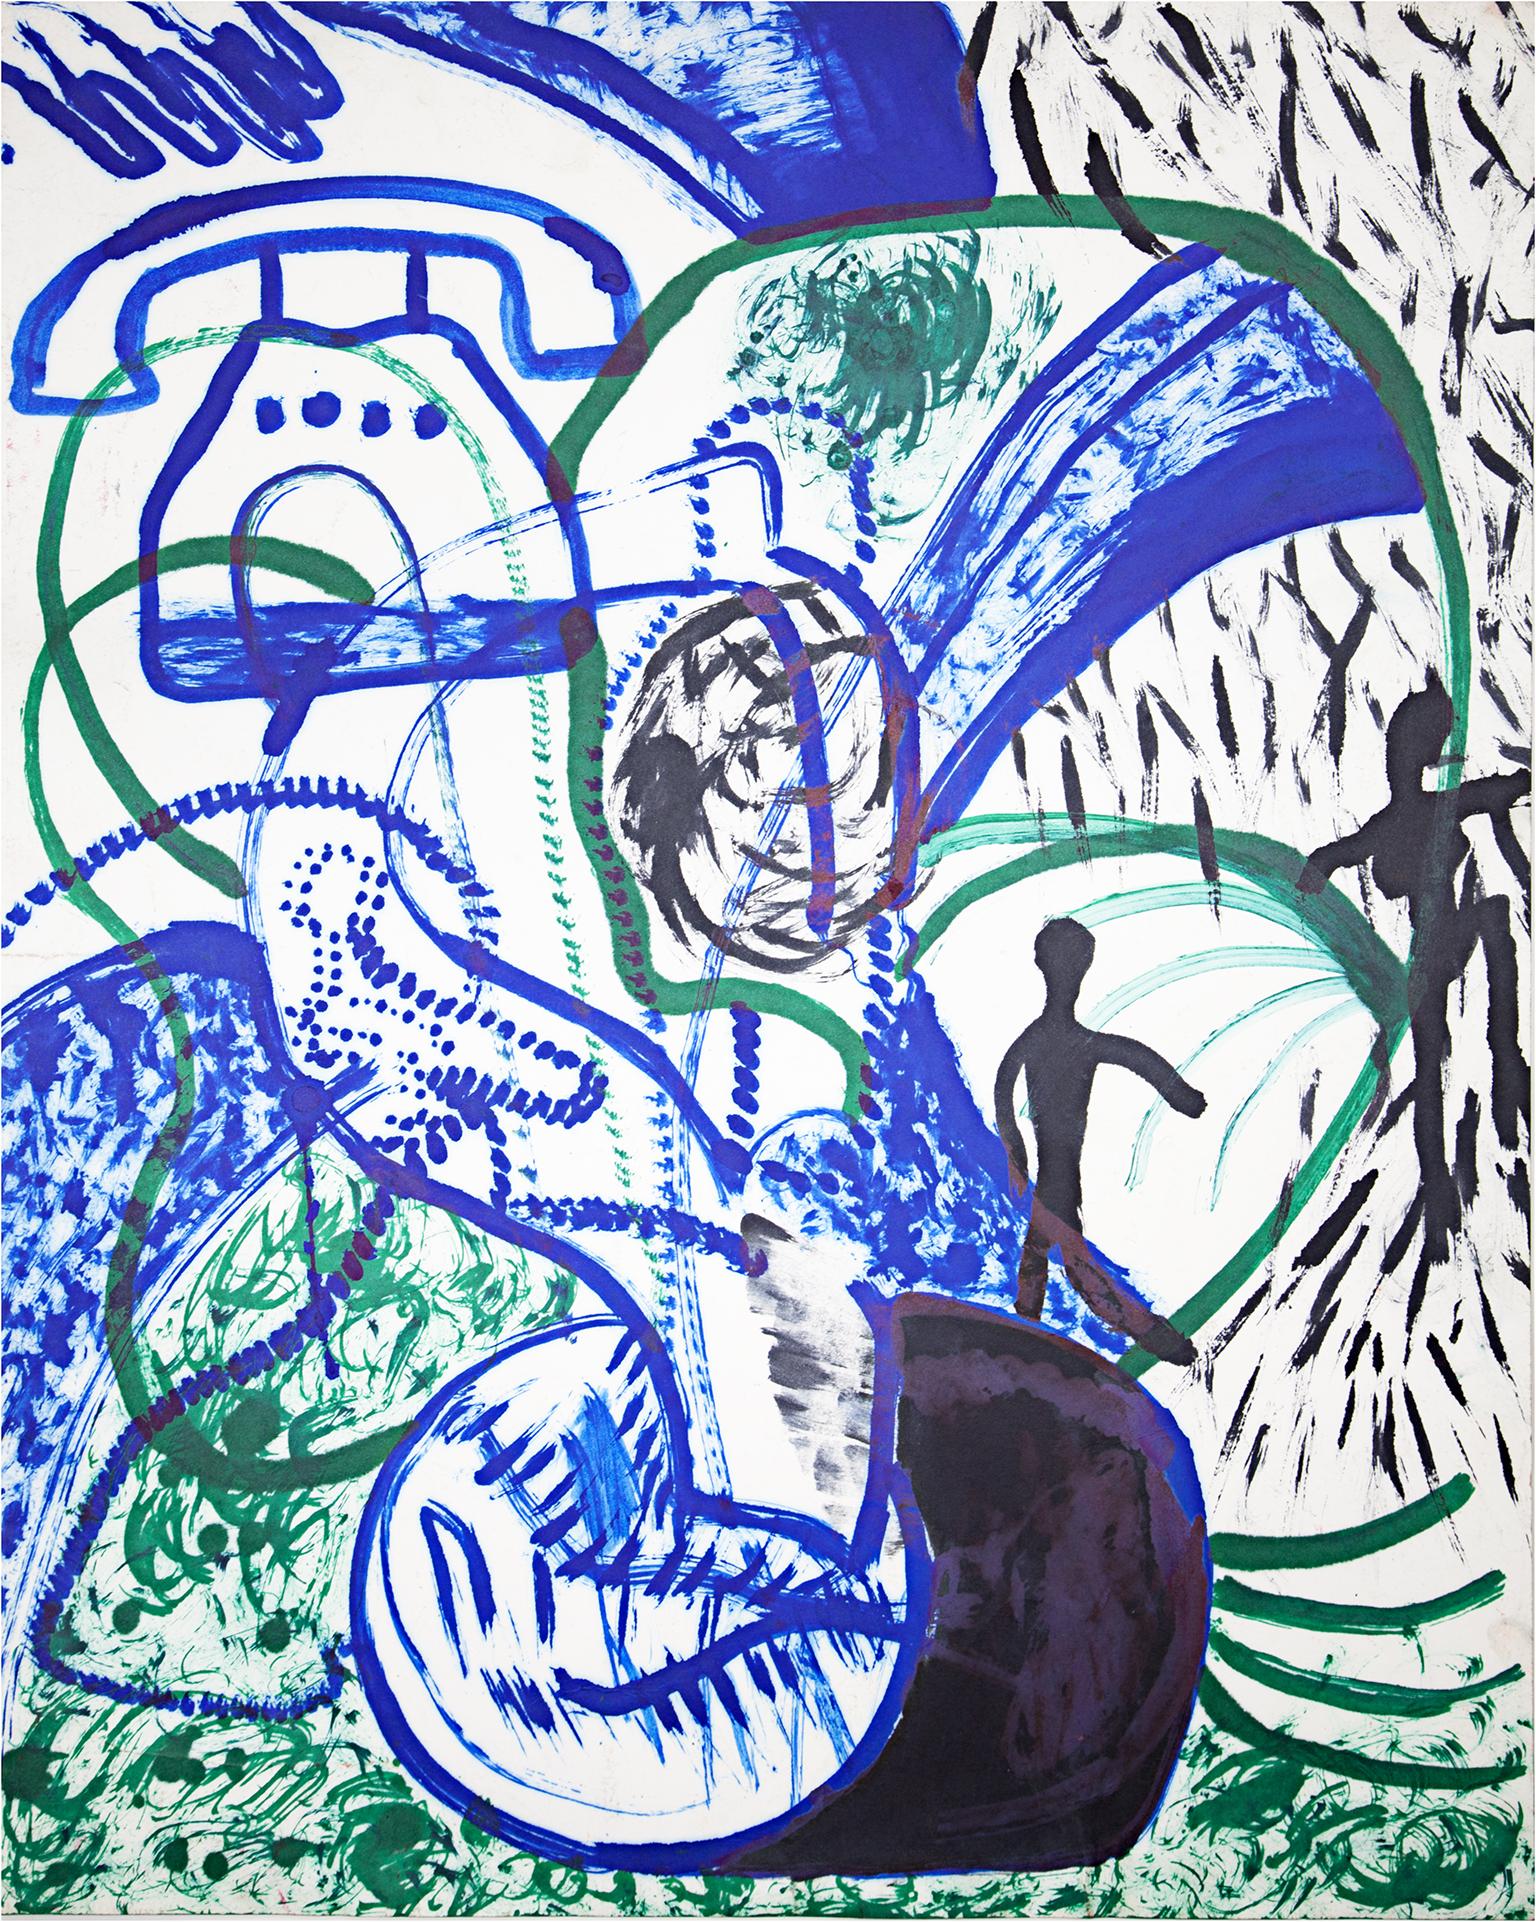 "Fortify" ist eine originale Ölpastellzeichnung auf Papier von Reginald K. Gee. Der Künstler hat das Werk auf der Rückseite paraphiert. Es zeigt abstrakte Zeichen, ein Telefon und ein paar Figuren in Blau, Grün und Schwarz. 

28" x 22" Kunst

Der